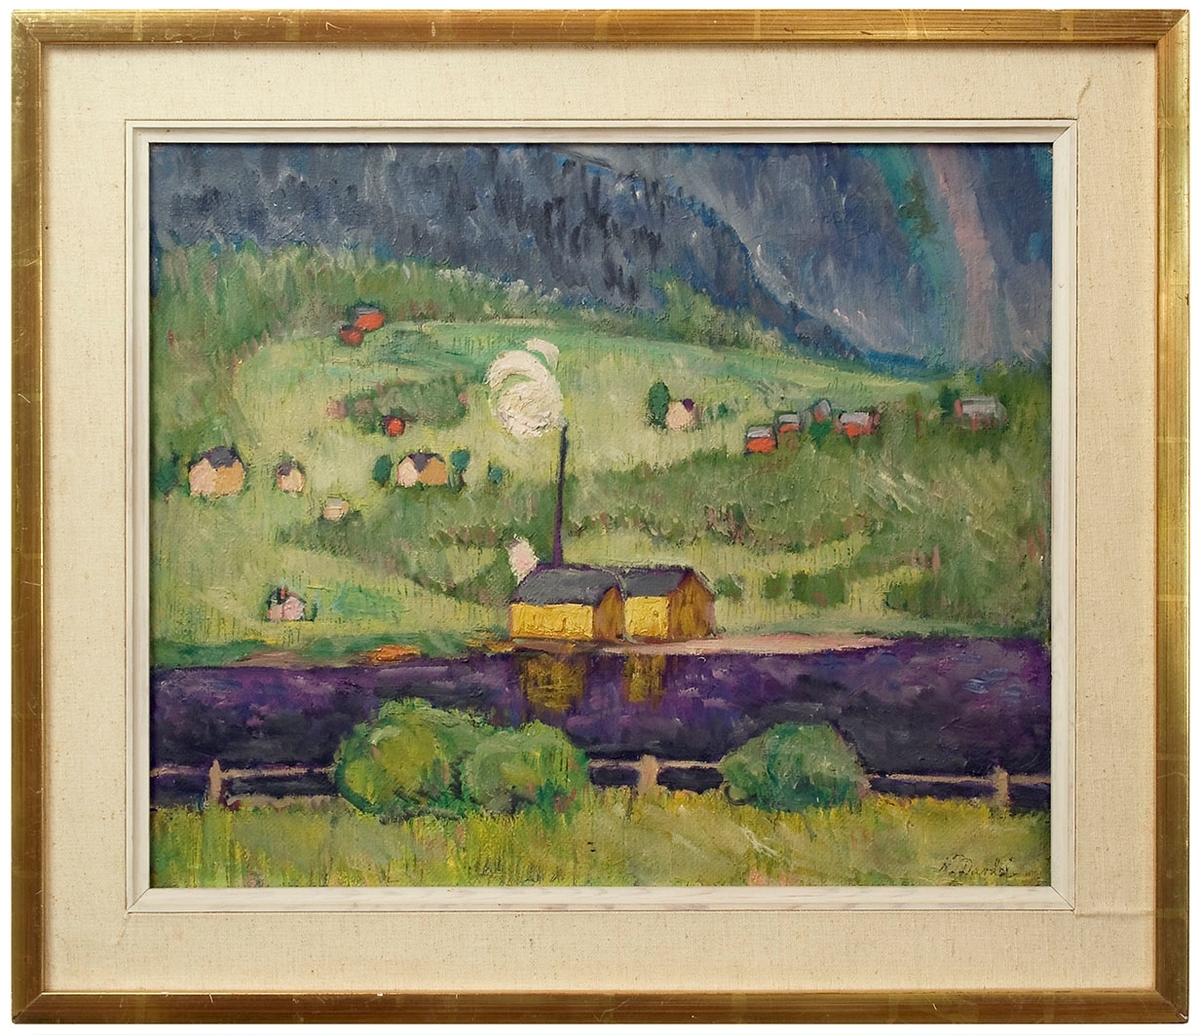 Landskap i klara färger där sågverket i gult speglar sig i lilaskimrande vatten, mot bakgrund av ljusgröna fält med enstaka hus och blånande berg. Med förenklade former och komplementfärger representerar Nils Dardel tidens begynnande modernism.